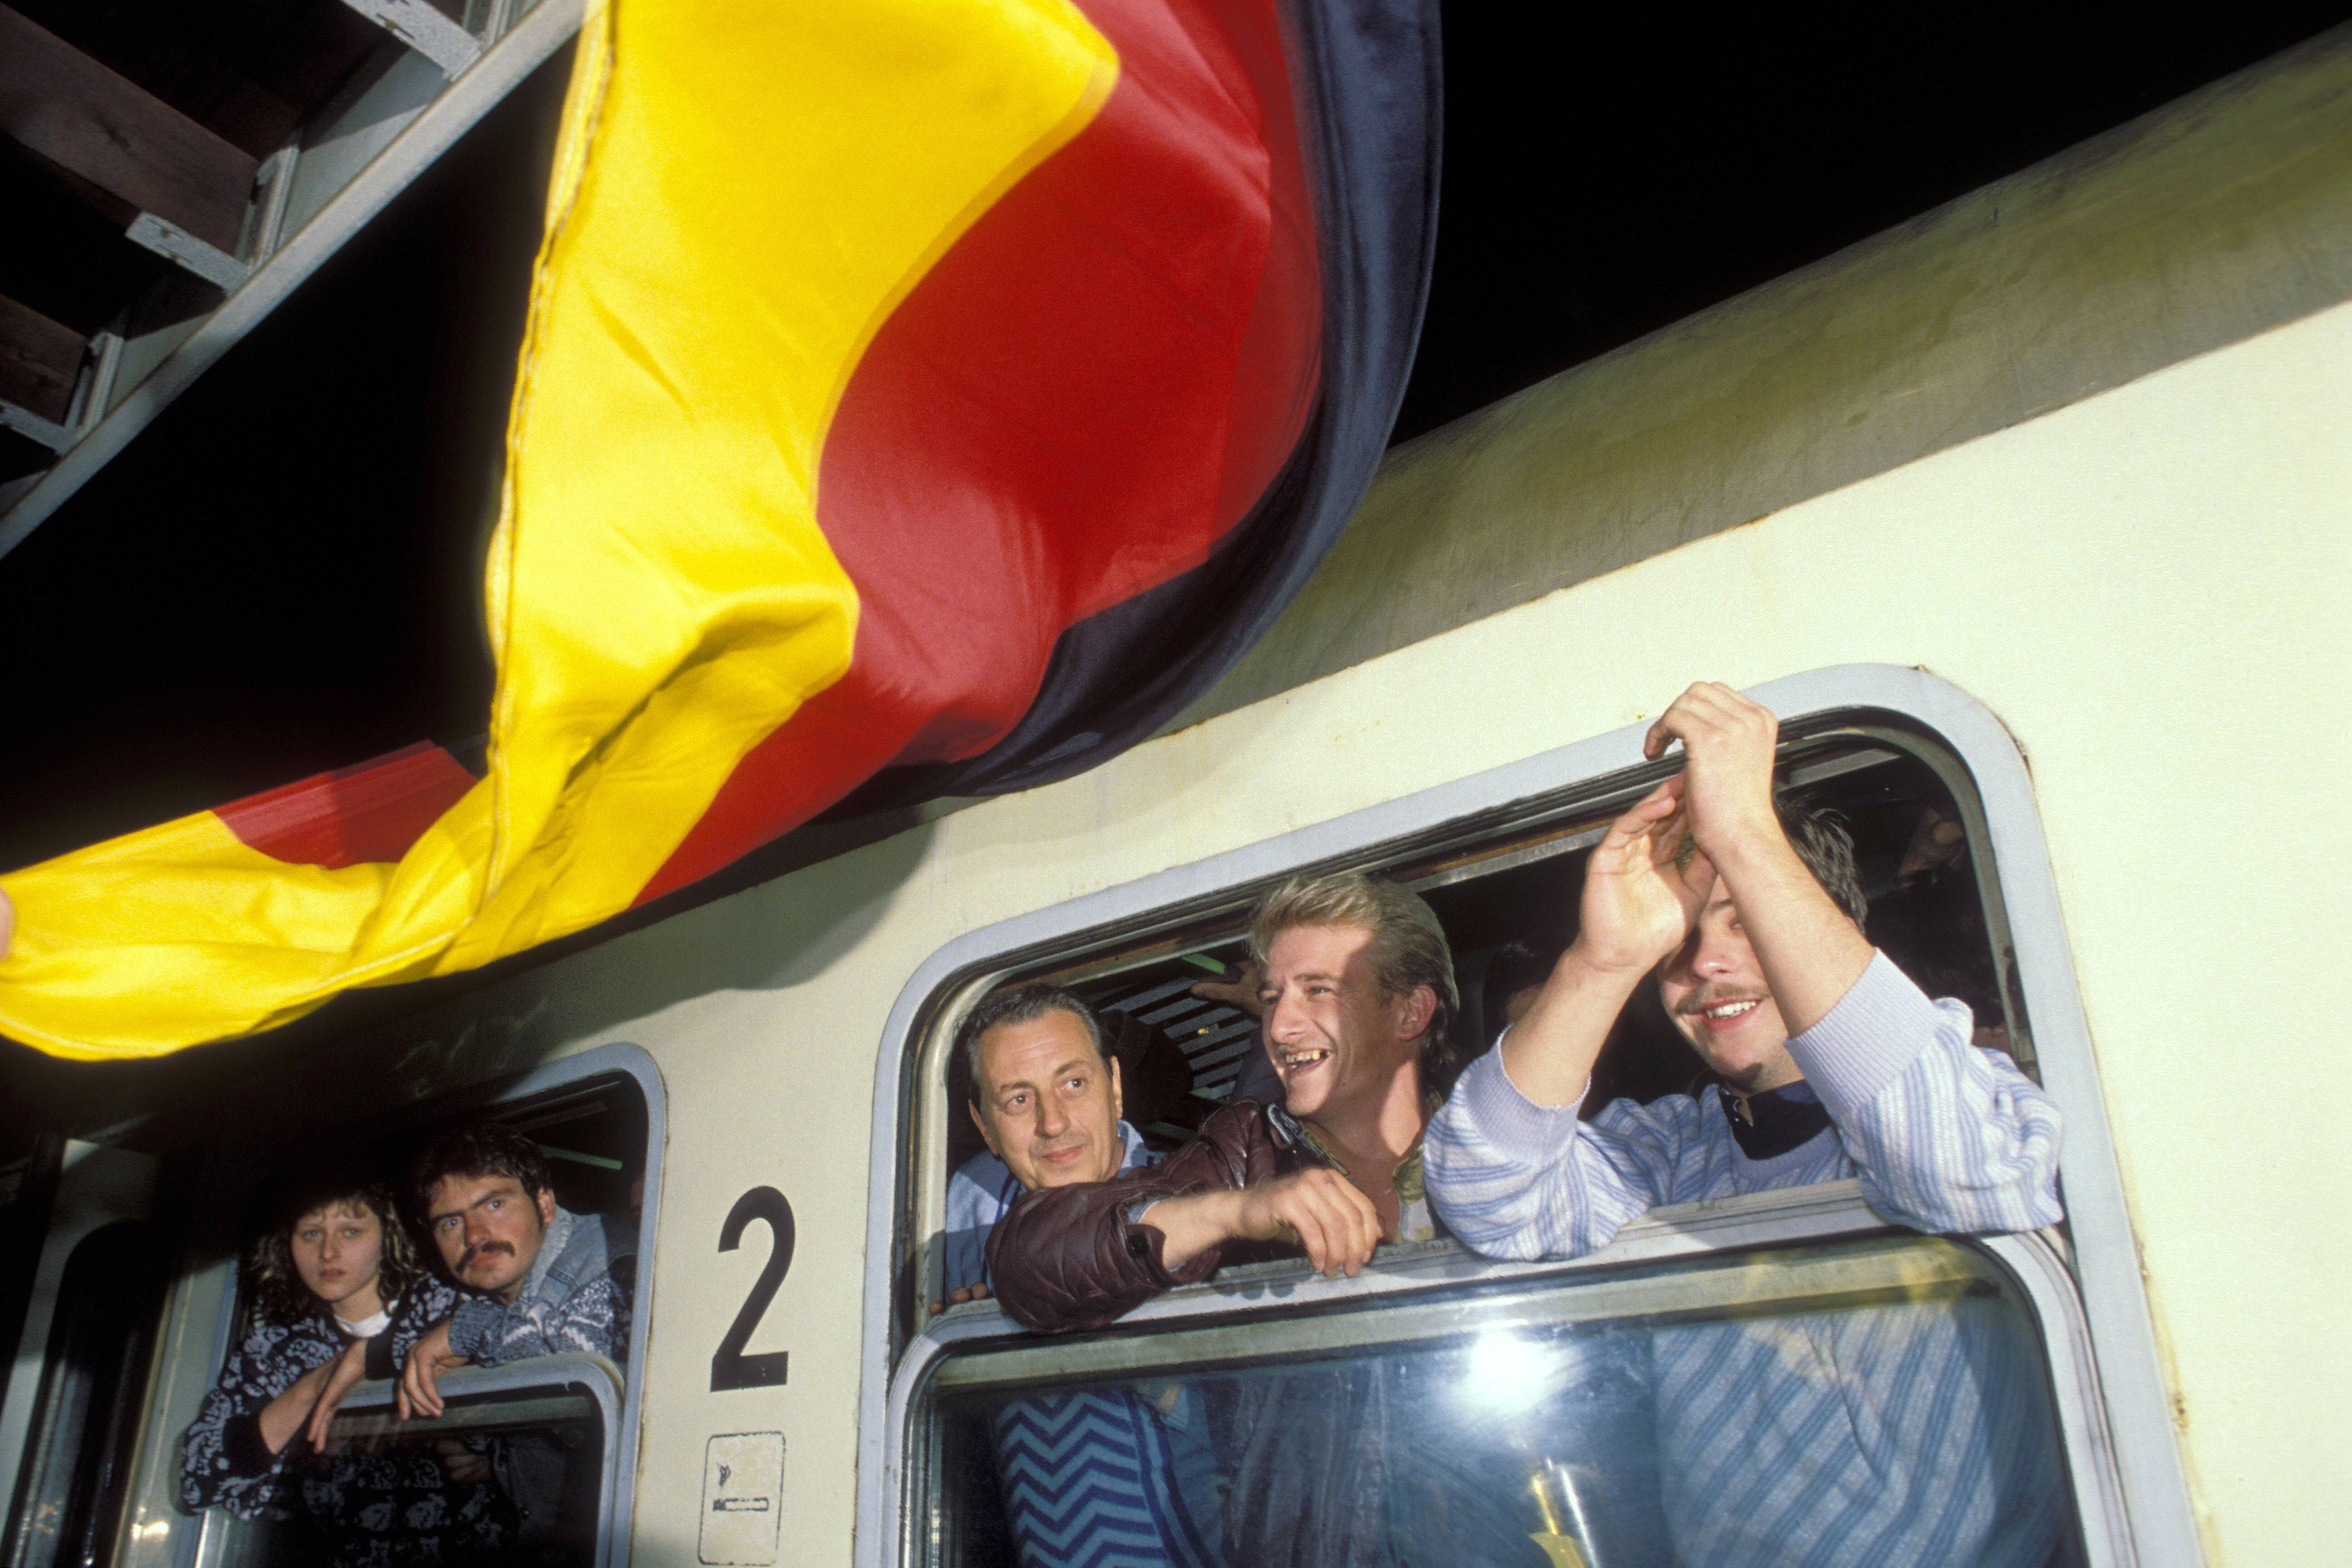 DDR-Flüchtlinge im Zug während der Ankunft in Hof im Oktober 1989. Vor dem Zug weht eine bundesdeutsche Flagge.